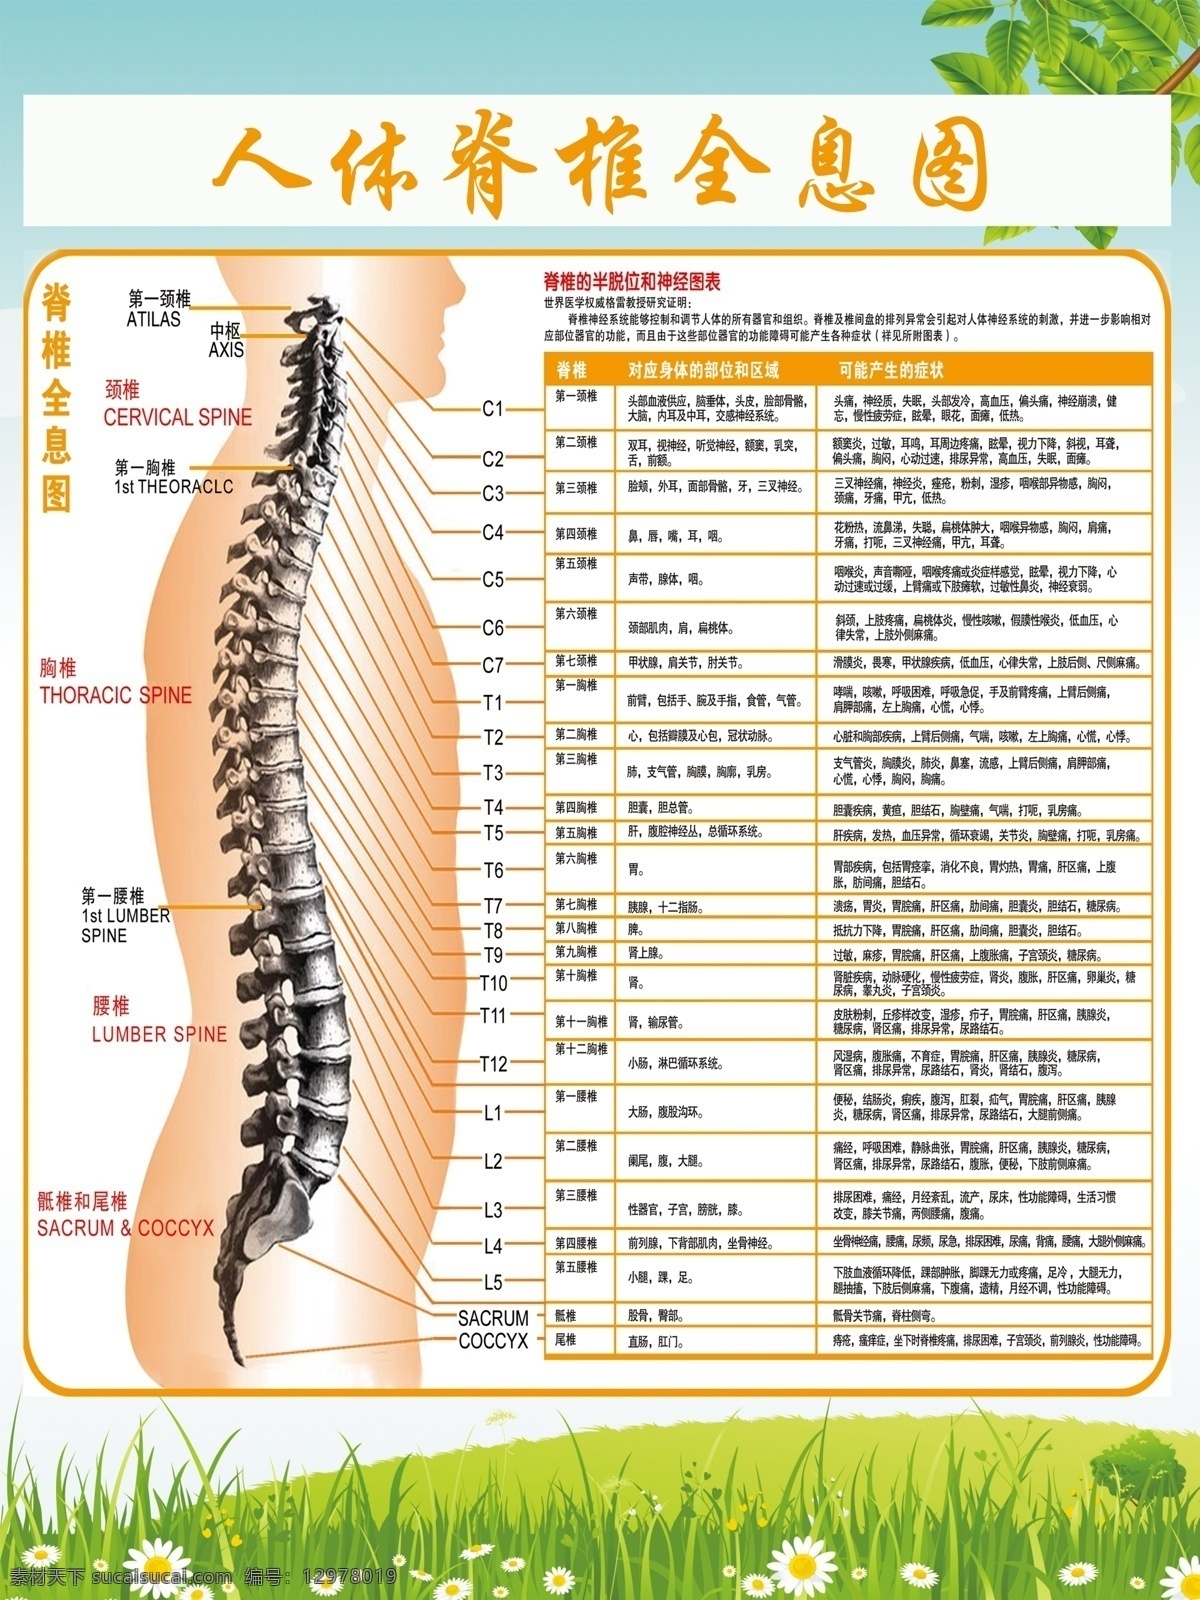 人体 脊椎 全息 图 展板 脊椎全息图 人体脊椎 脊椎图展板 医院脊椎图